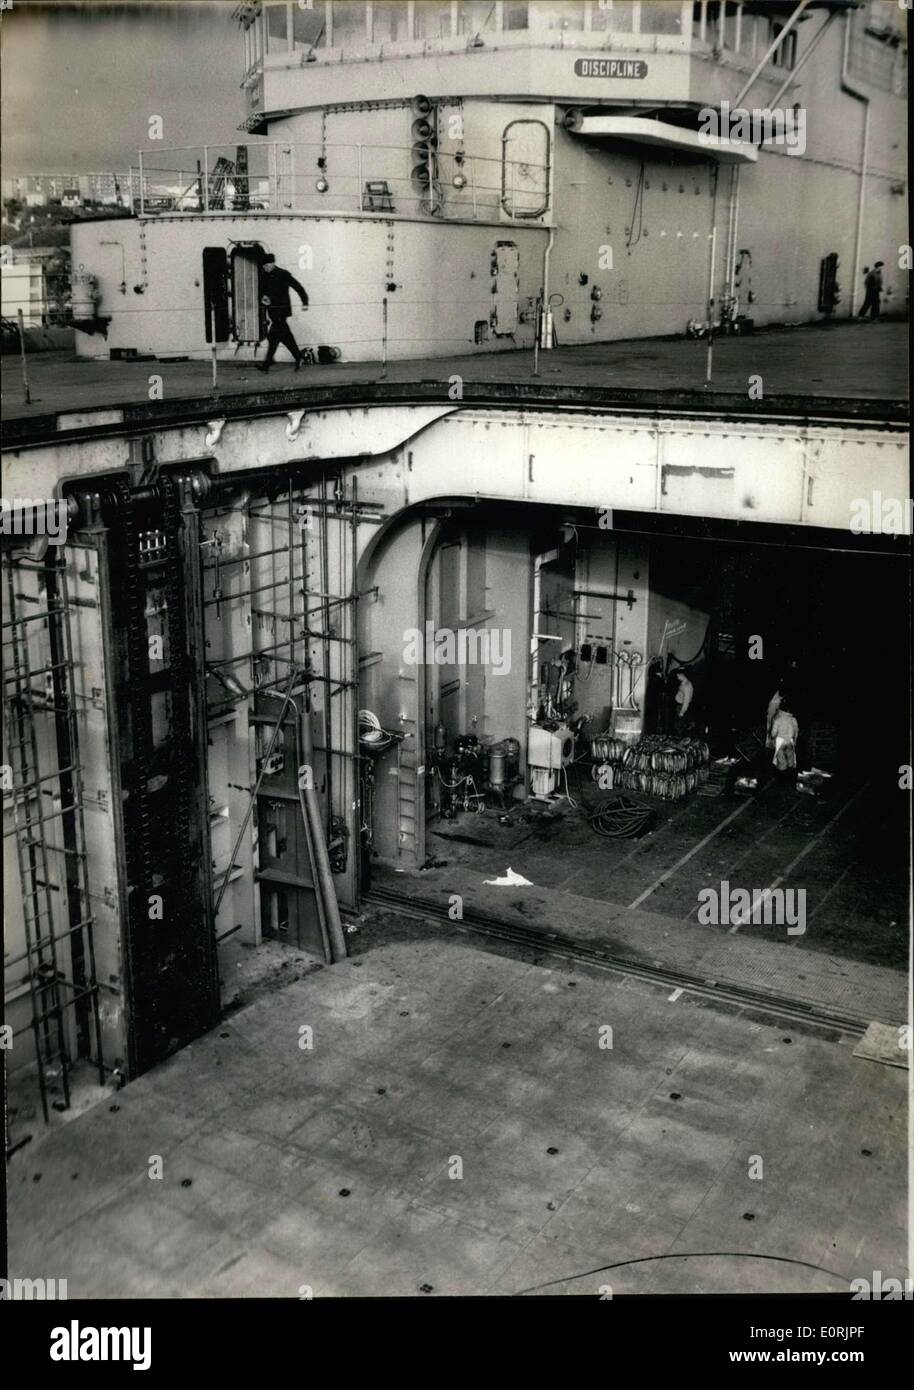 Novembre 24, 1959 - La fierté et la joie de la Marine Nationale française, le porte-avions Clemenceau'' ''a subi son premier essai essais en mer au large de Brest. Sur la photo : une vue de l'ascenseur géant le chargement et déchargement des machines. Banque D'Images